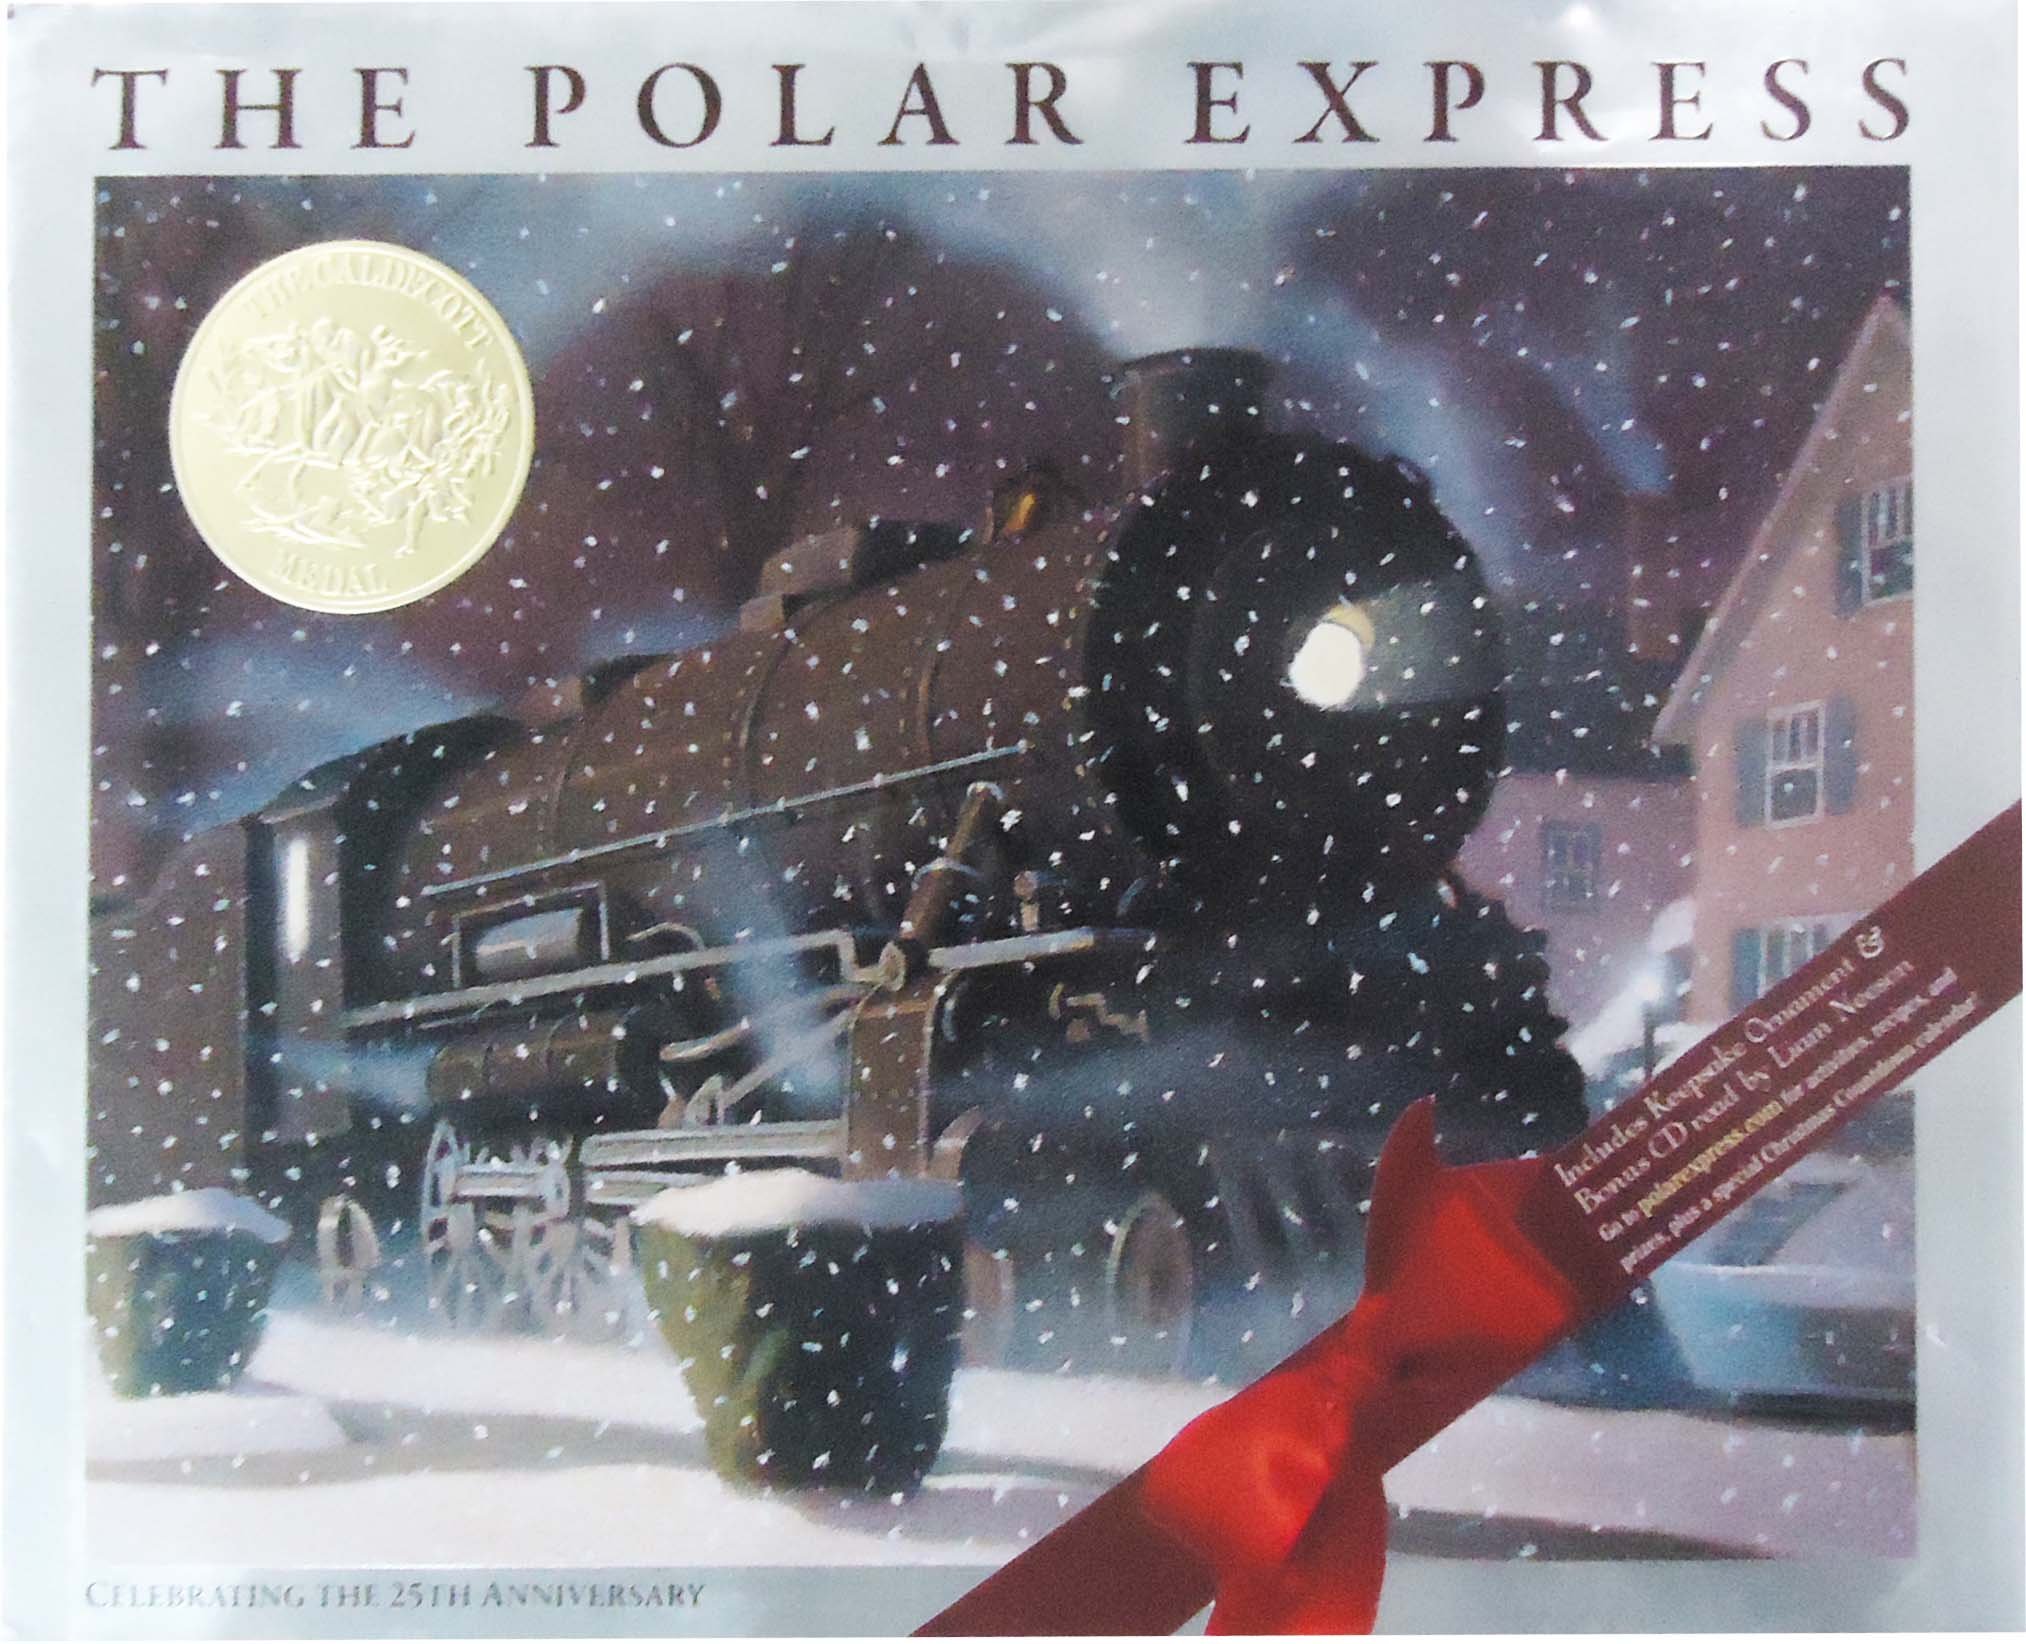 polar-express-book-tickets-book-tickets-the-polar-express-train